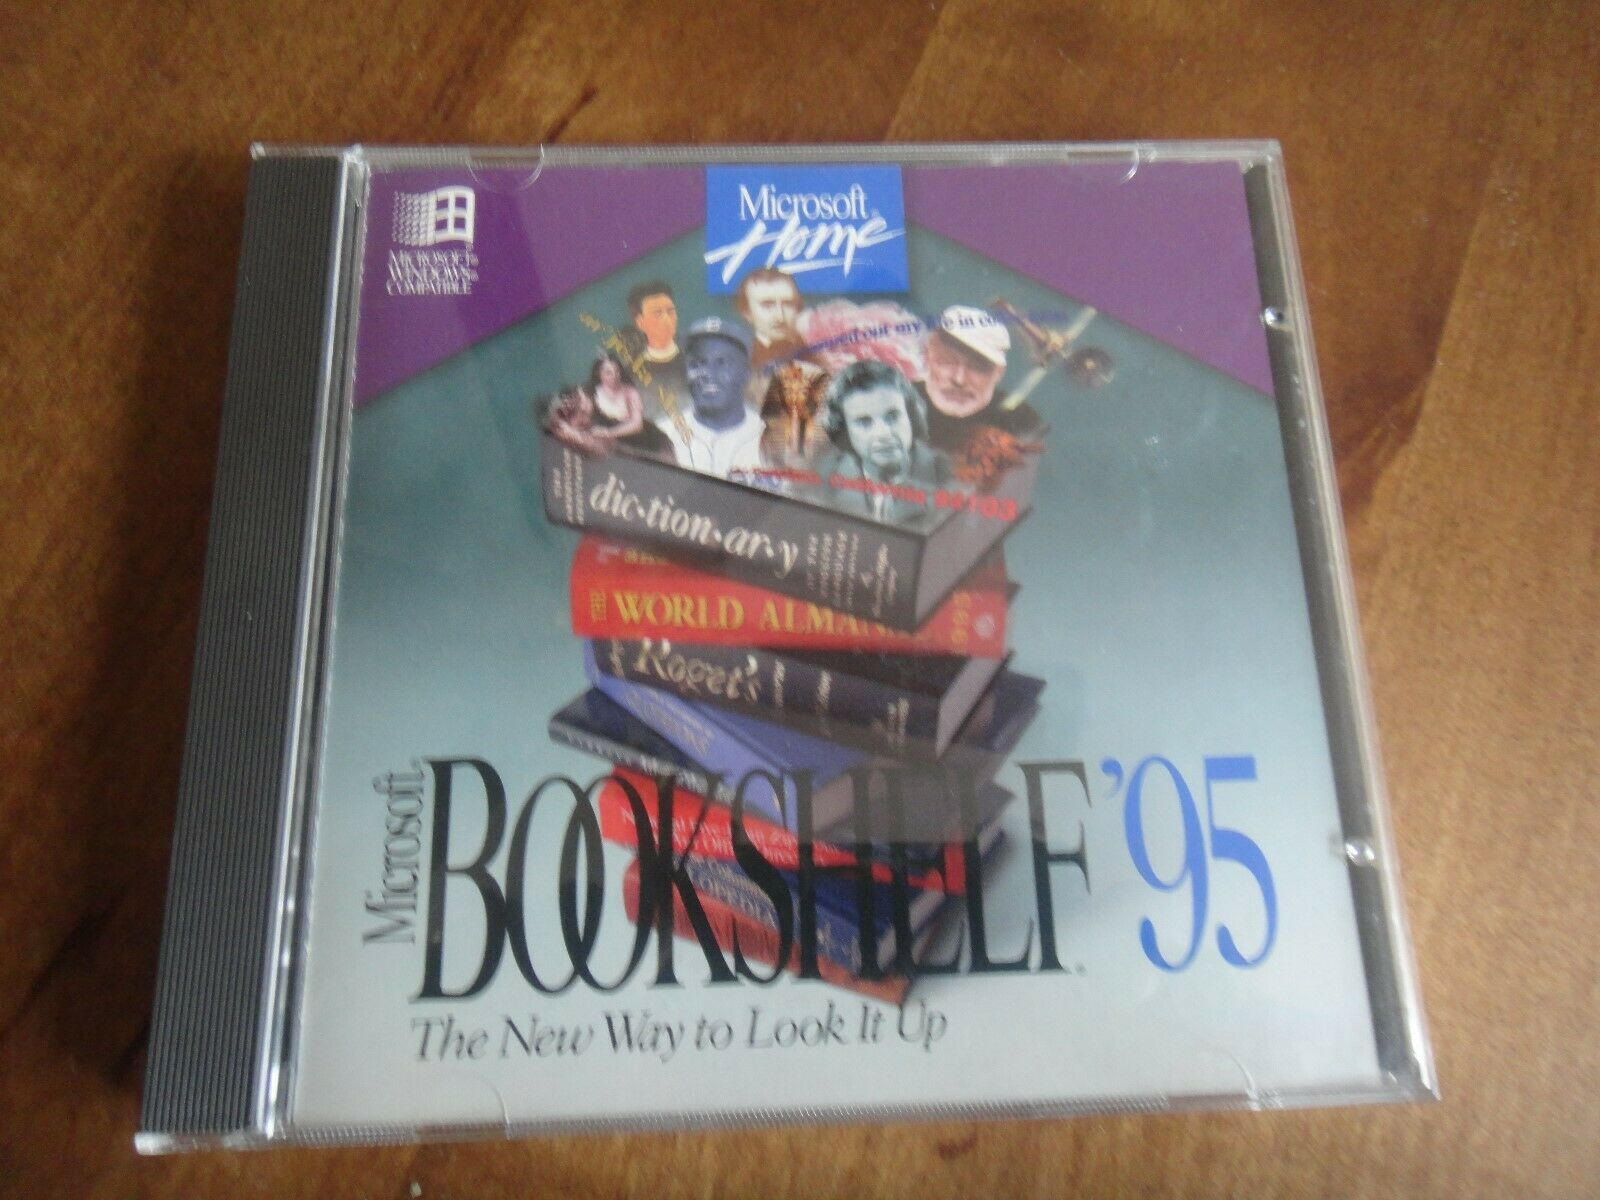 BookShelf 95 CD Rom - $3.96